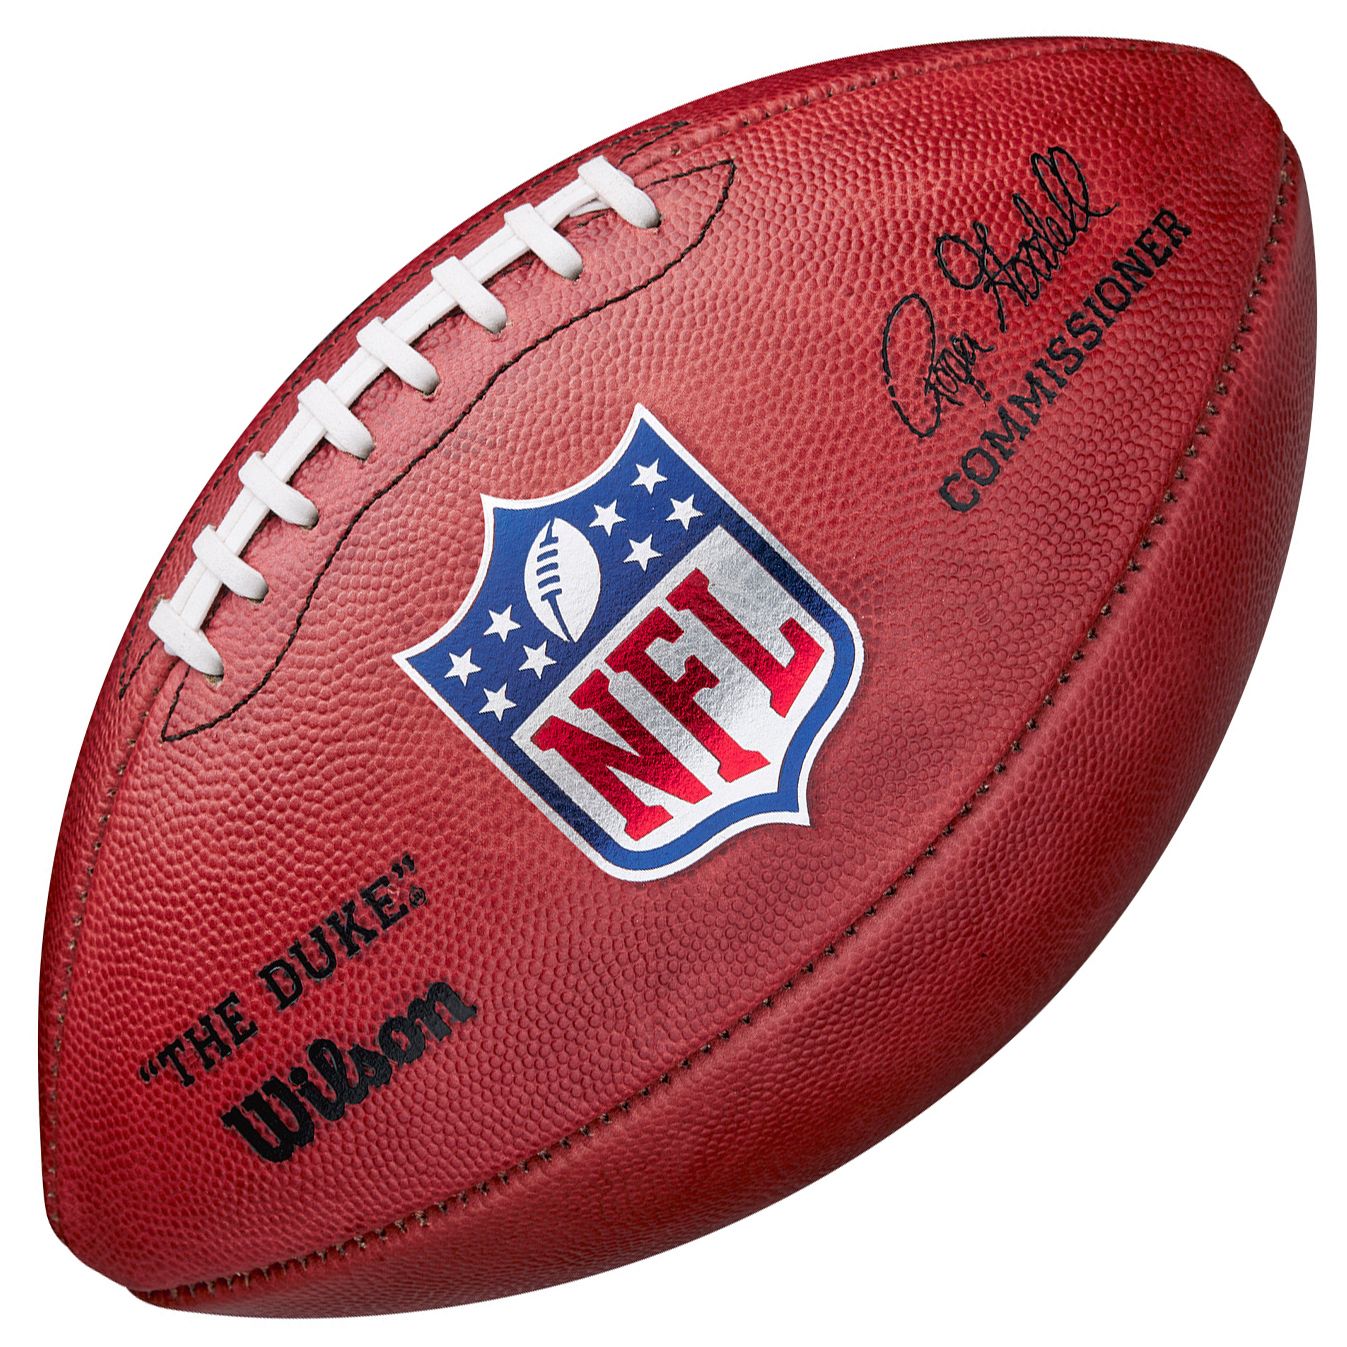 Wilson 2020 NFL “The Duke” Official 